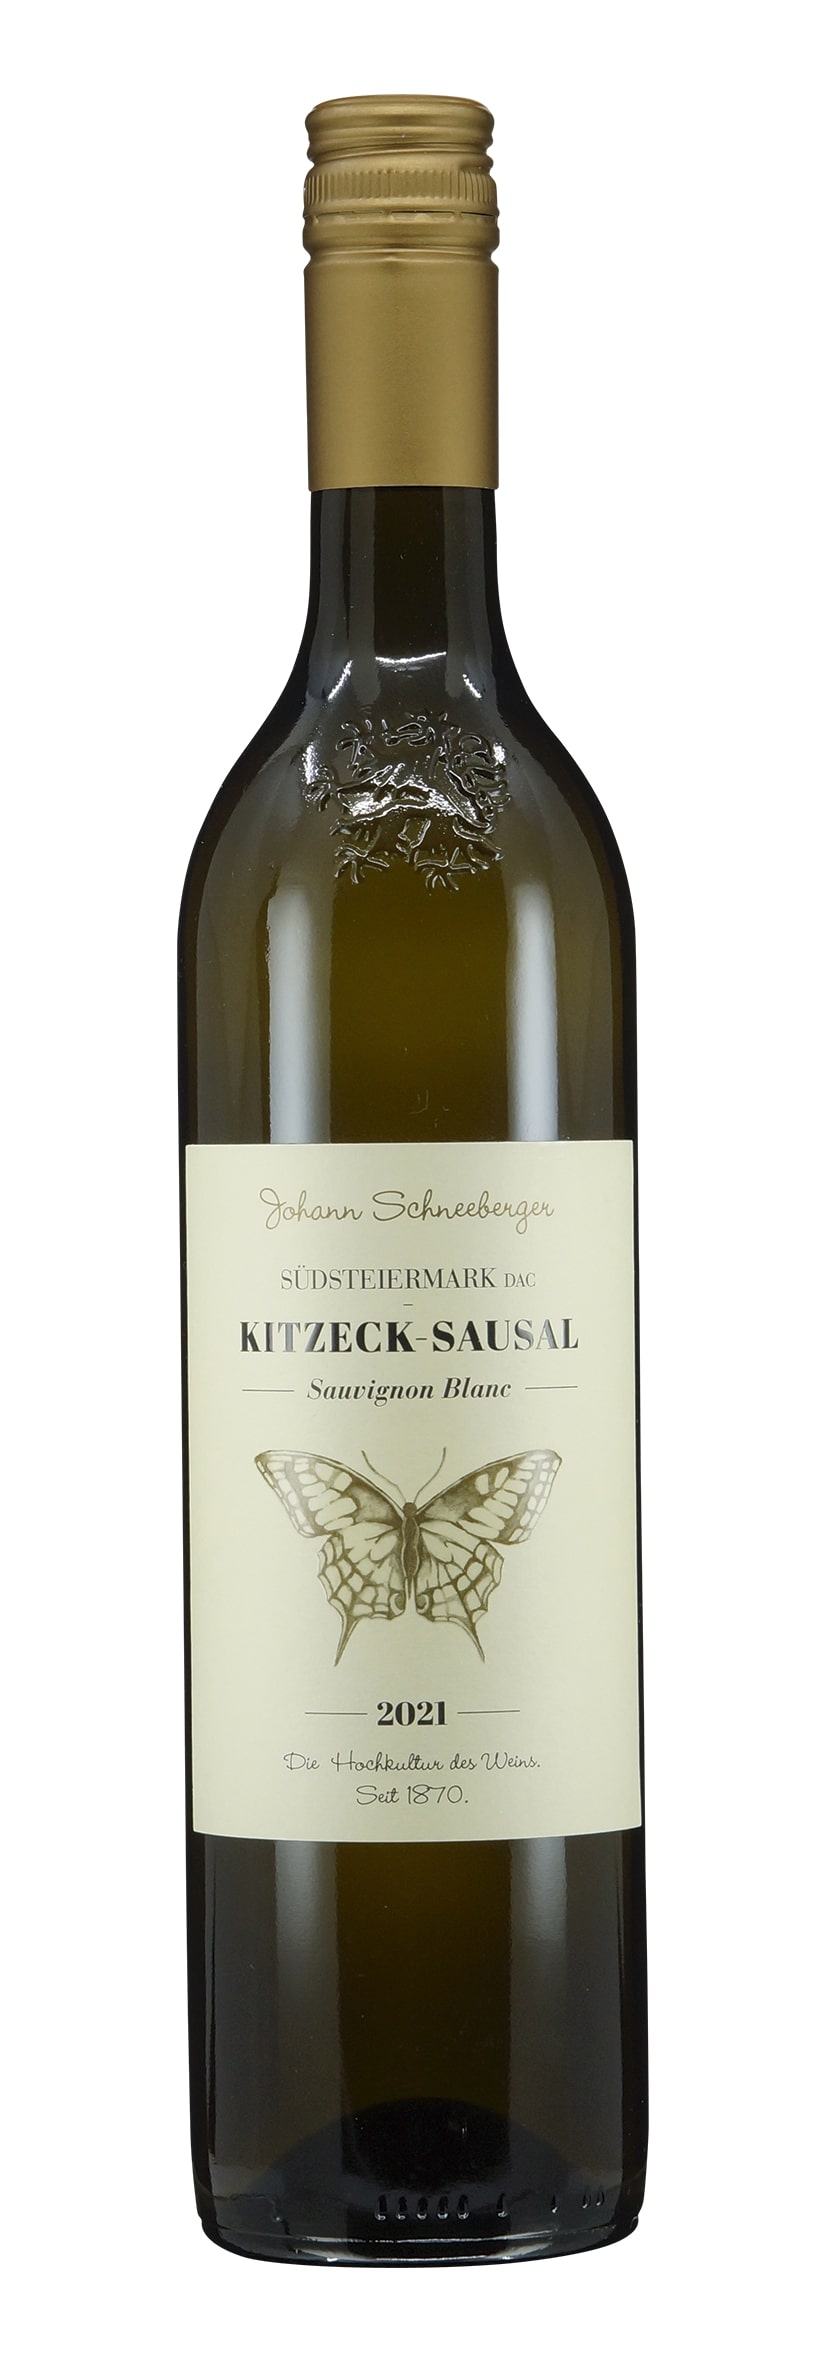 Südsteiermark DAC Kitzeck-Sausal Sauvignon Blanc 2021